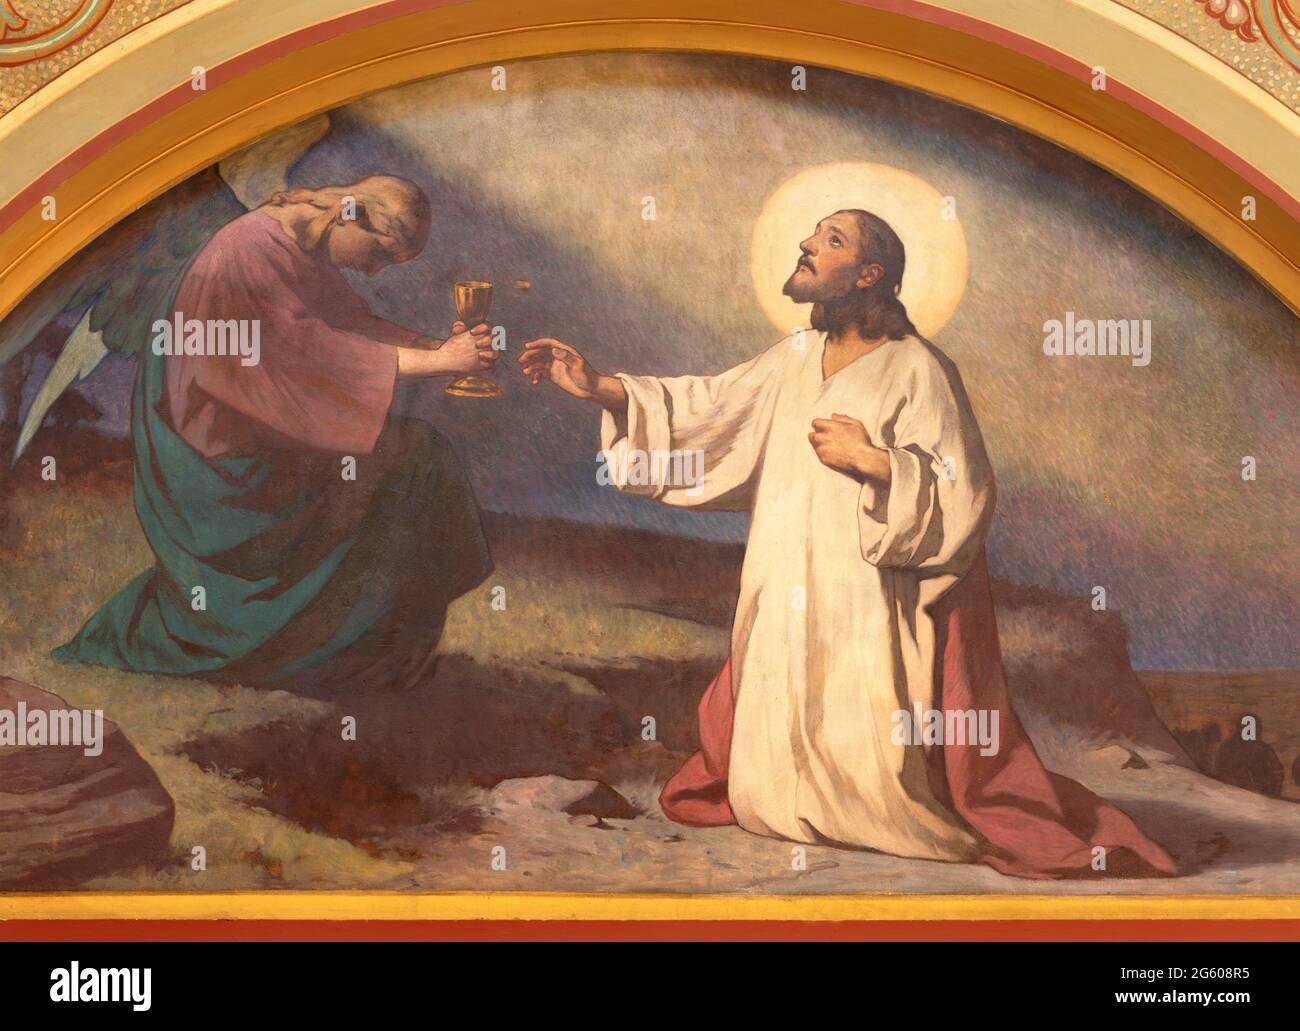 WIEN, AUSTIRA - 18. JUNI 2021: Das Fresko des Jesus-Gebets im Garten Gethsemane in der Herz Jesu Kirche Anfang 20. Jh. Stockfoto